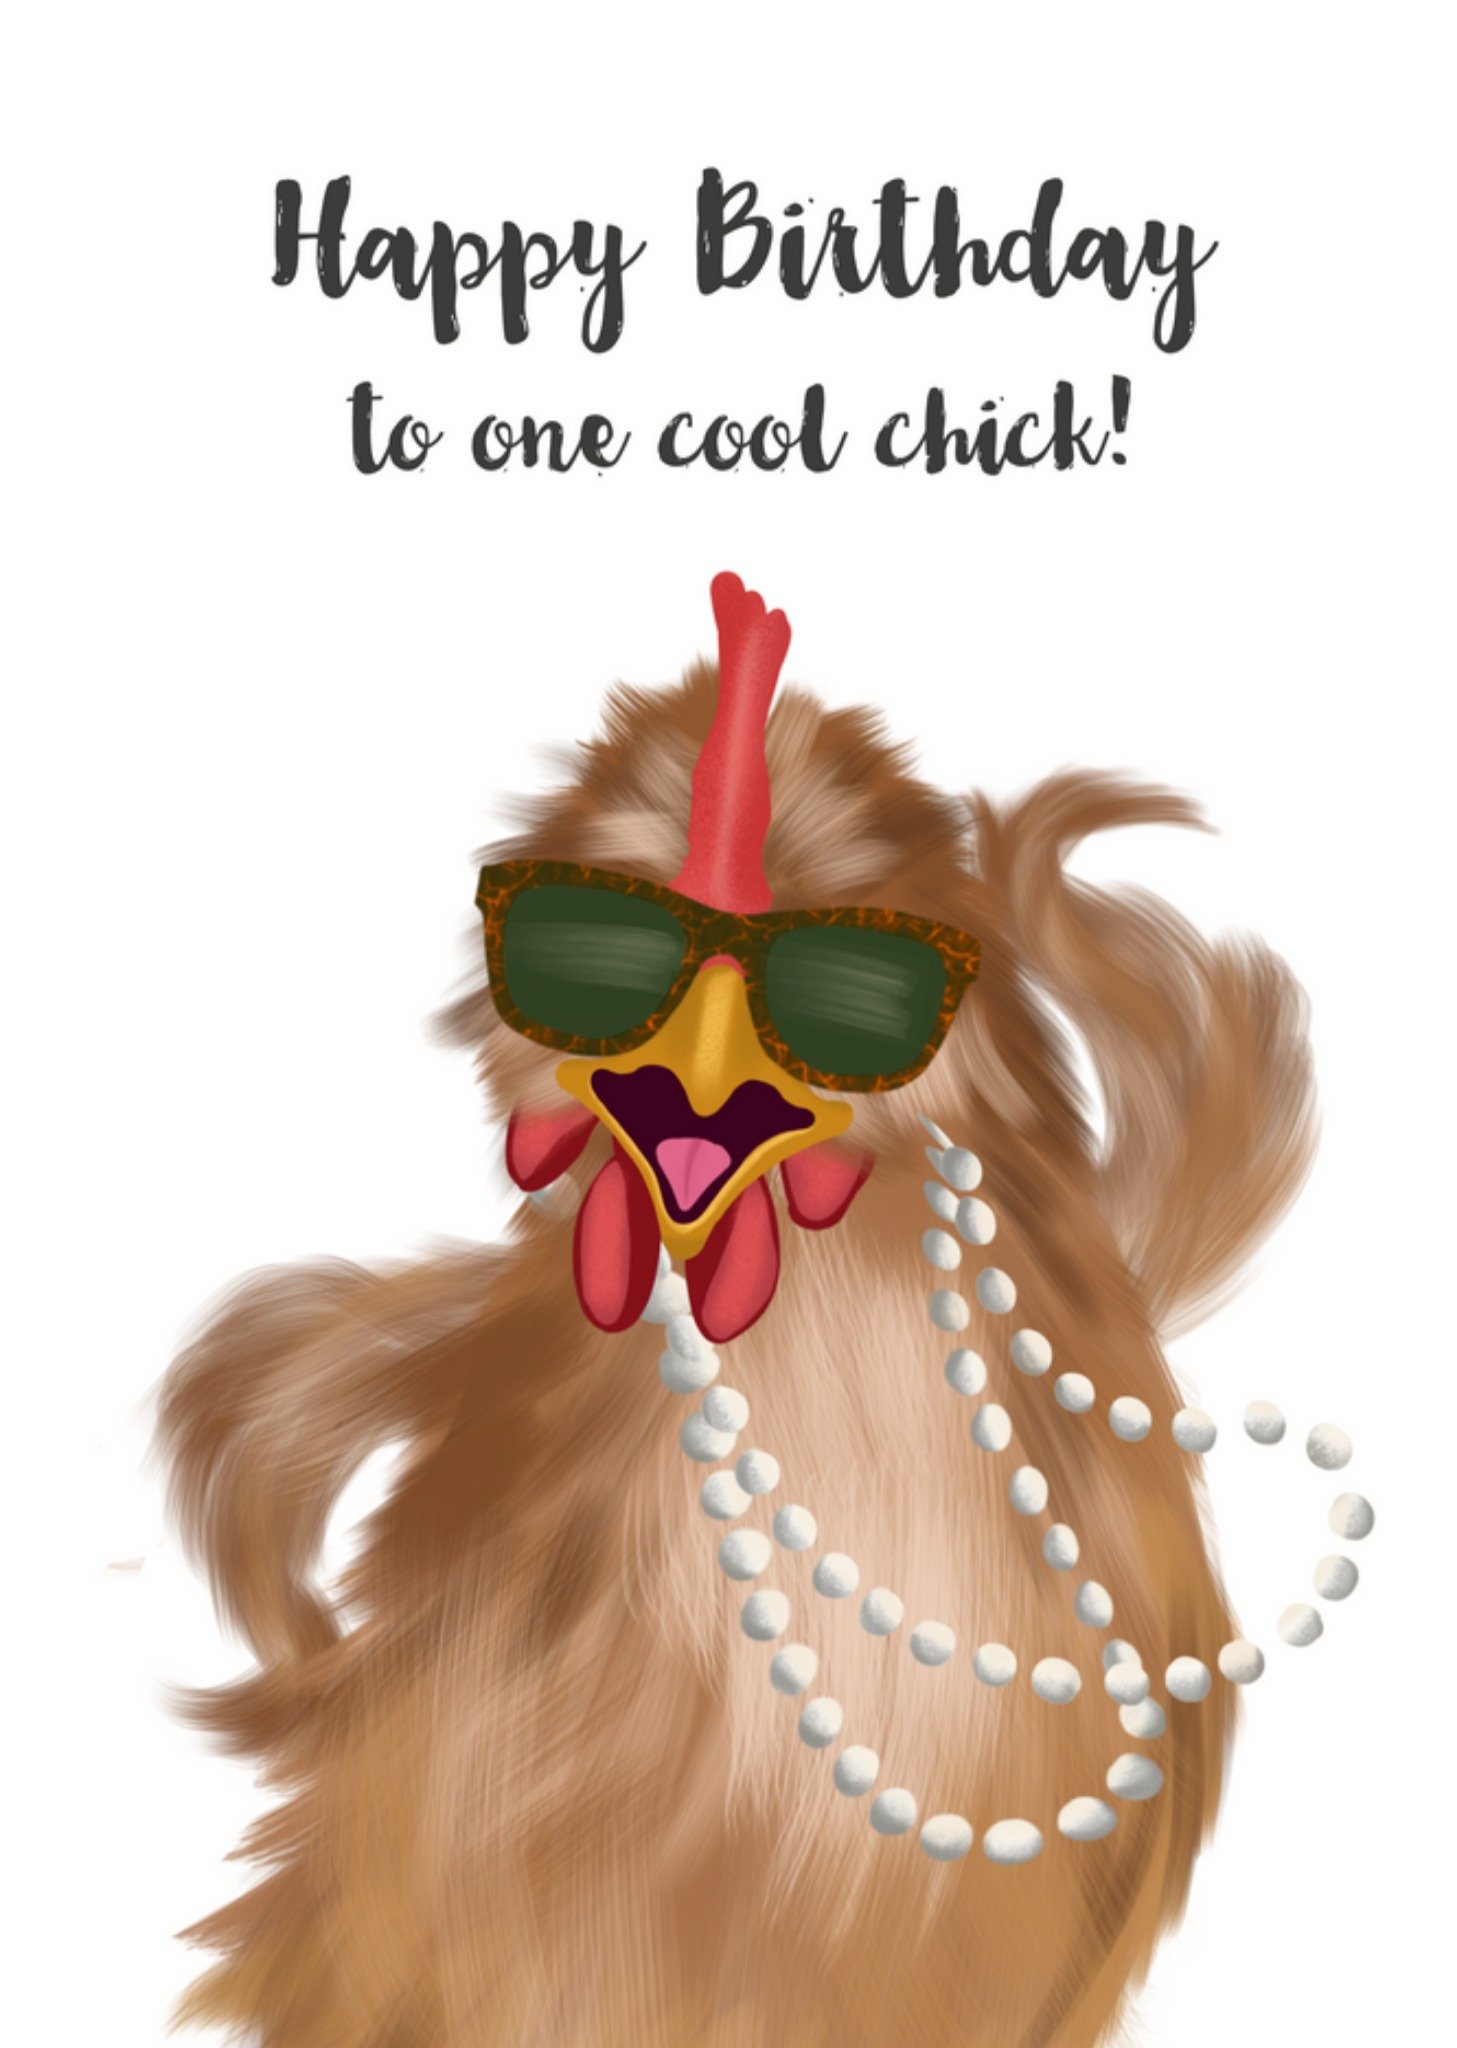 Tsjip - Verjaardagskaart - One cool chick